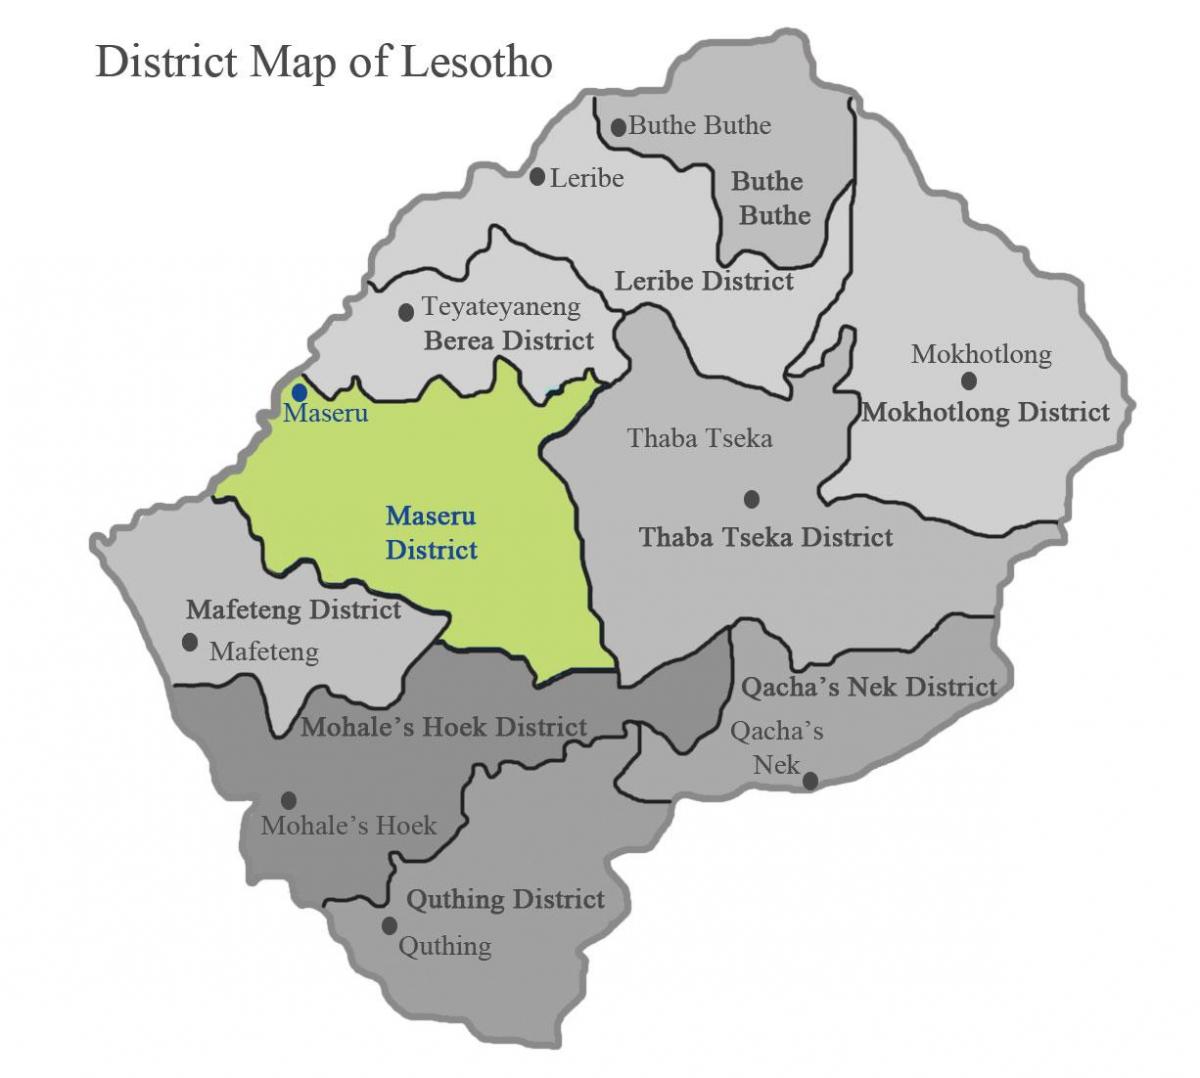 kaart van Lesotho toont wijken